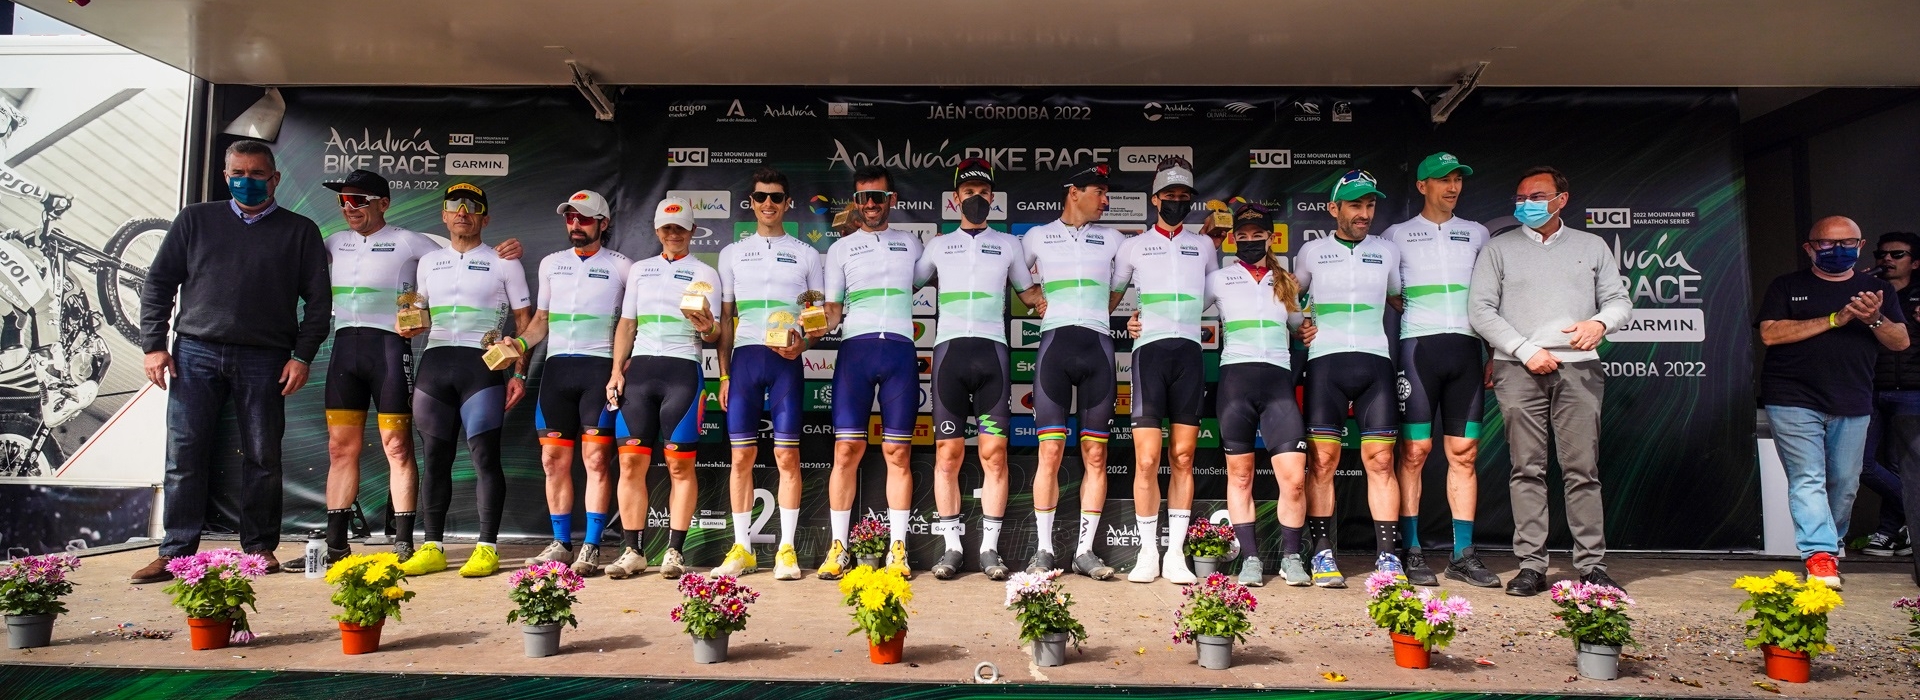 Ellos son los ganadores de esta edición de Andalucía Bike Race by Garmin